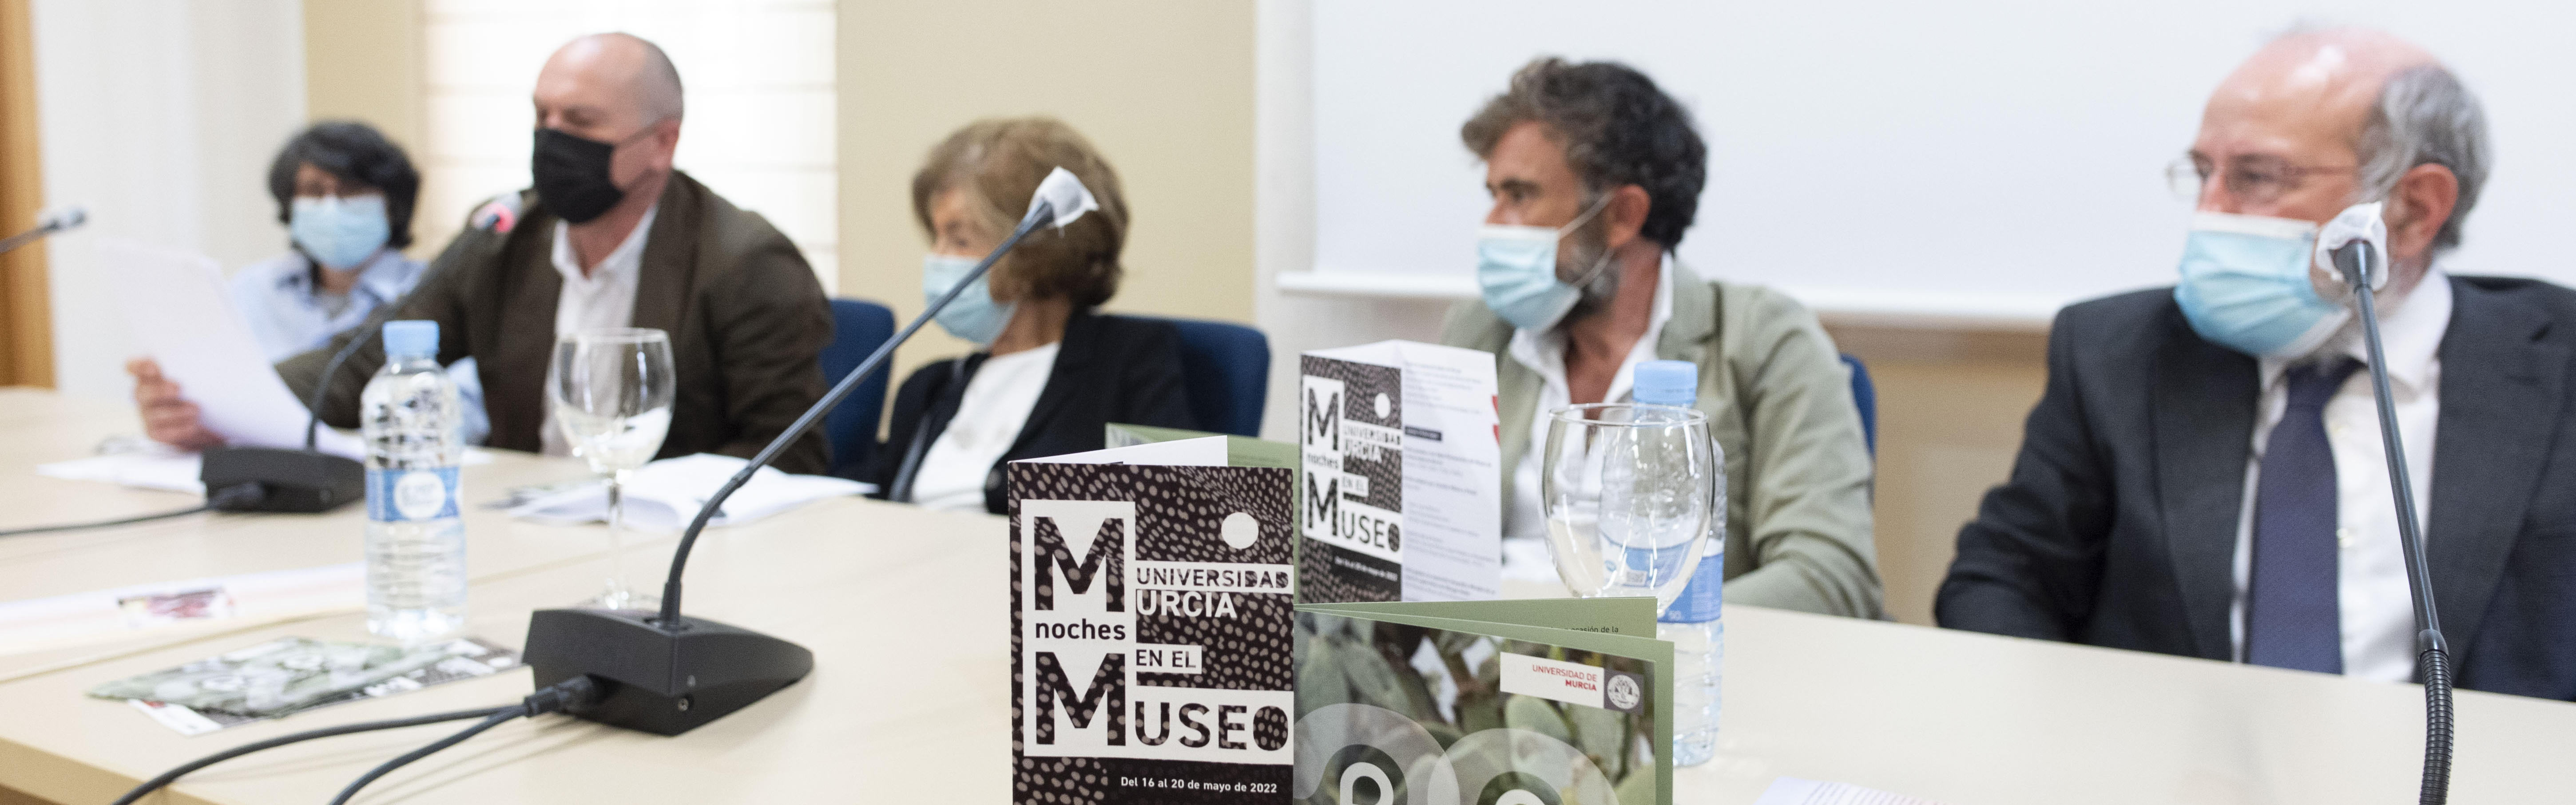 El Museo de la UMU organiza más de 25 actividades hasta el 20 de mayo con motivo de la ‘Noche de los Museos’